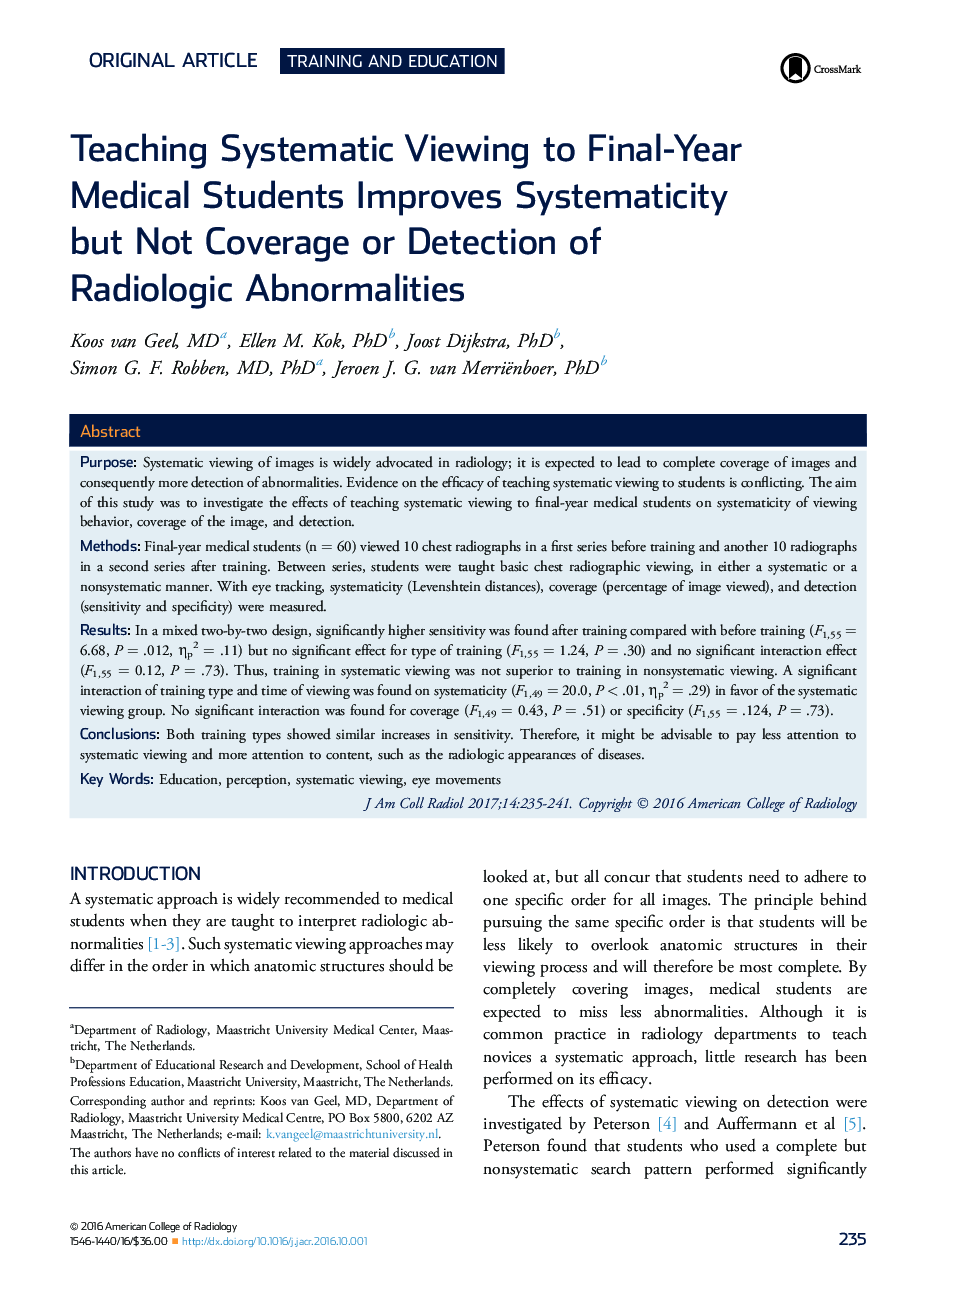 تدریس منظم در نظر گرفتن دانشجویان پزشکی سال نویسی، سیستممندی را بهبود می بخشد، اما نه پوشش و یا تشخیص اختلالات رادیولوژیک 